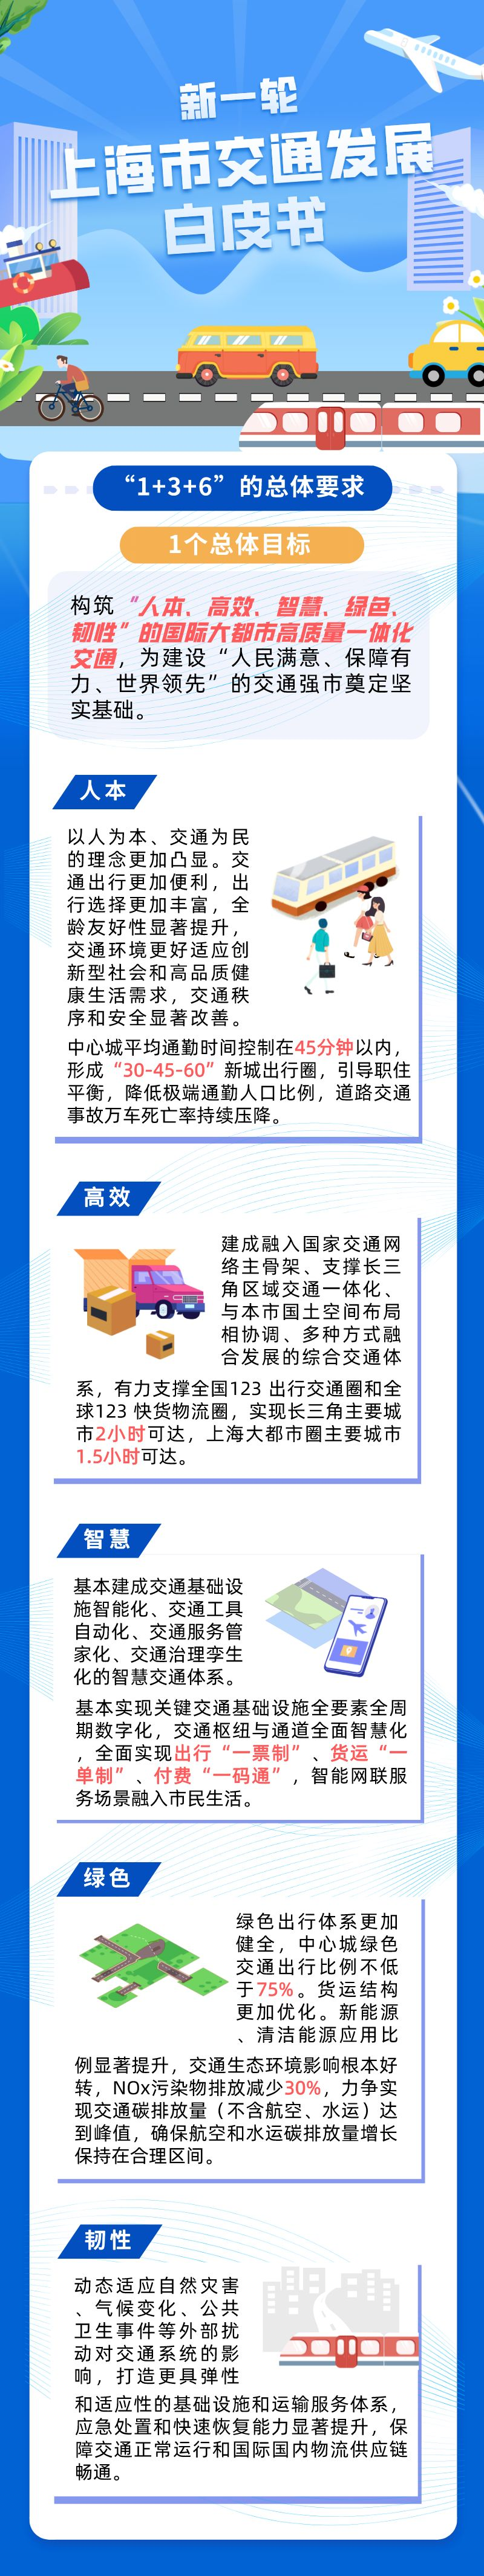 一图读懂 新一轮《上海市交通发展白皮书》1.png